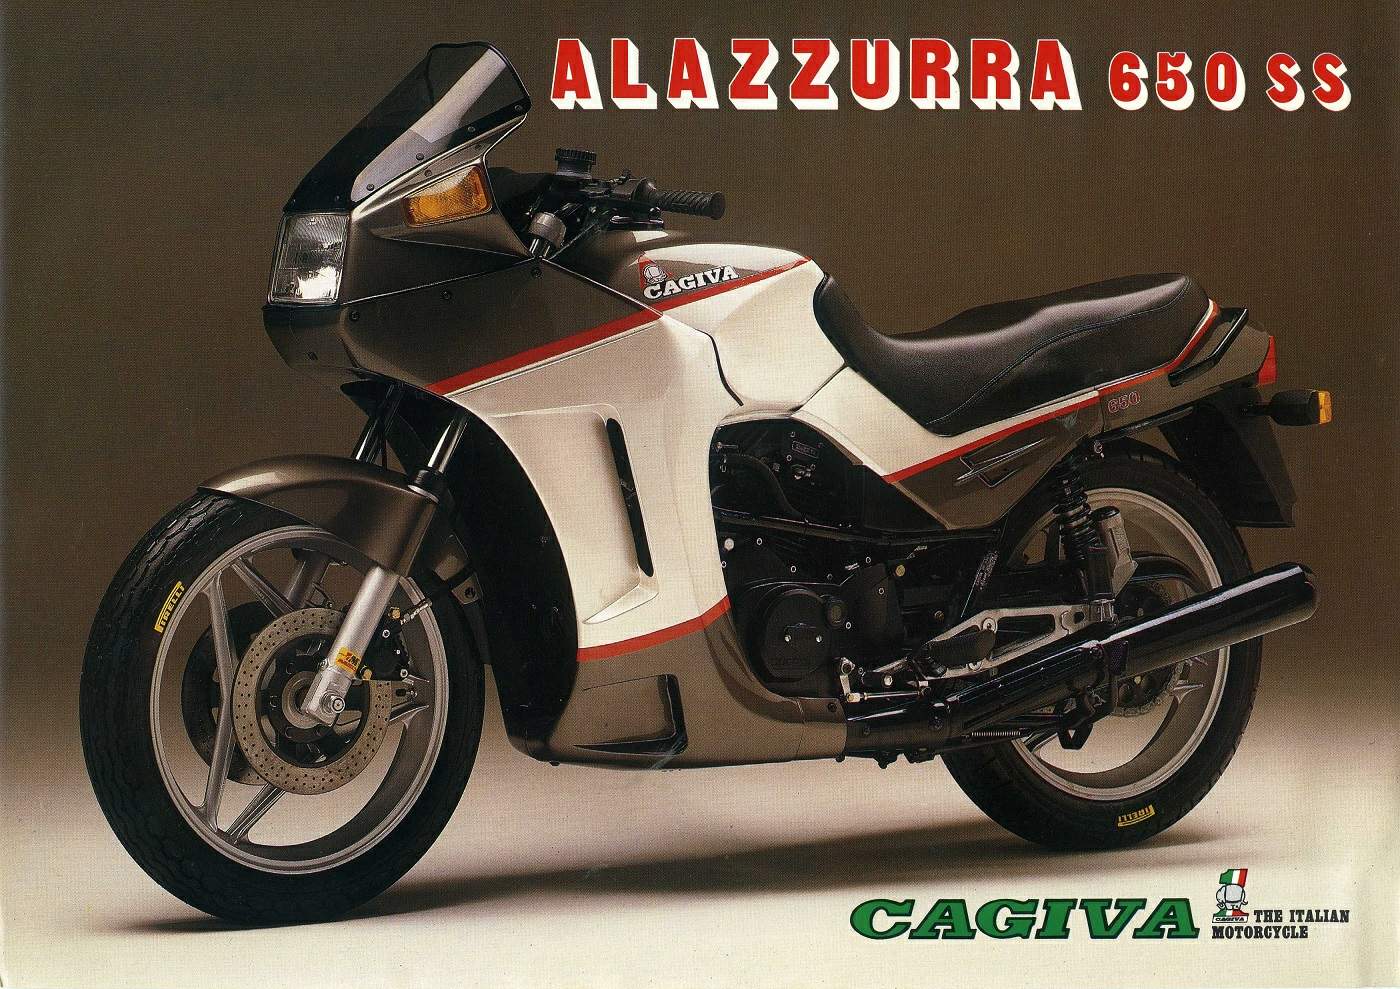 CAGIVA Alazzurra